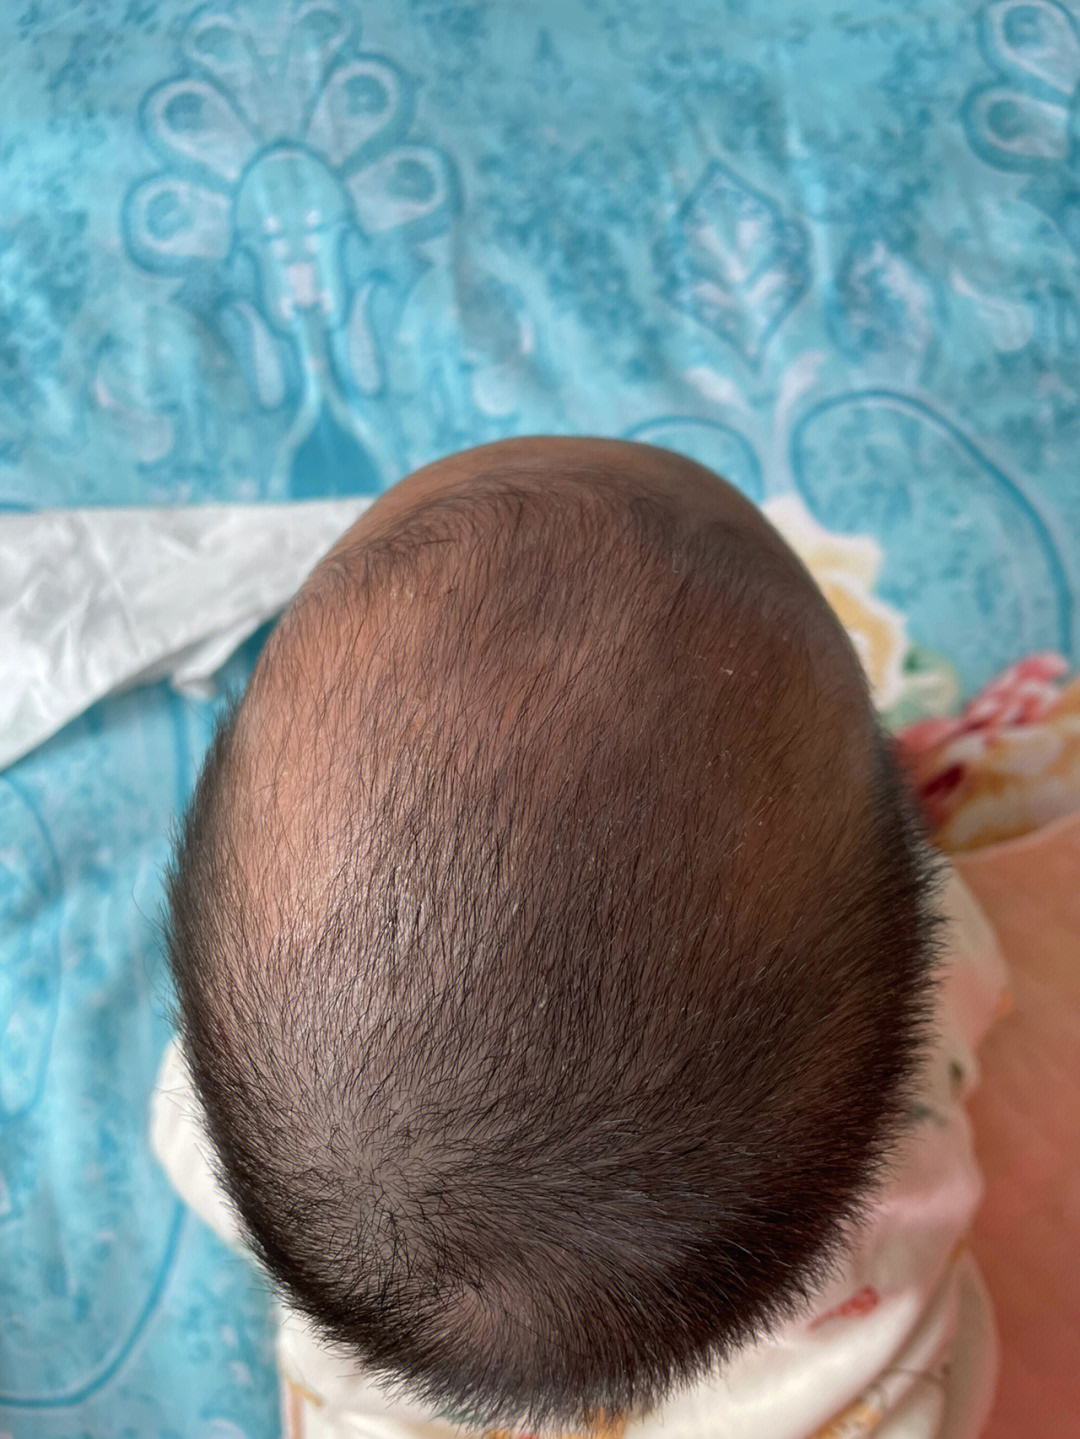 婴儿后脑勺枕骨沟图片图片